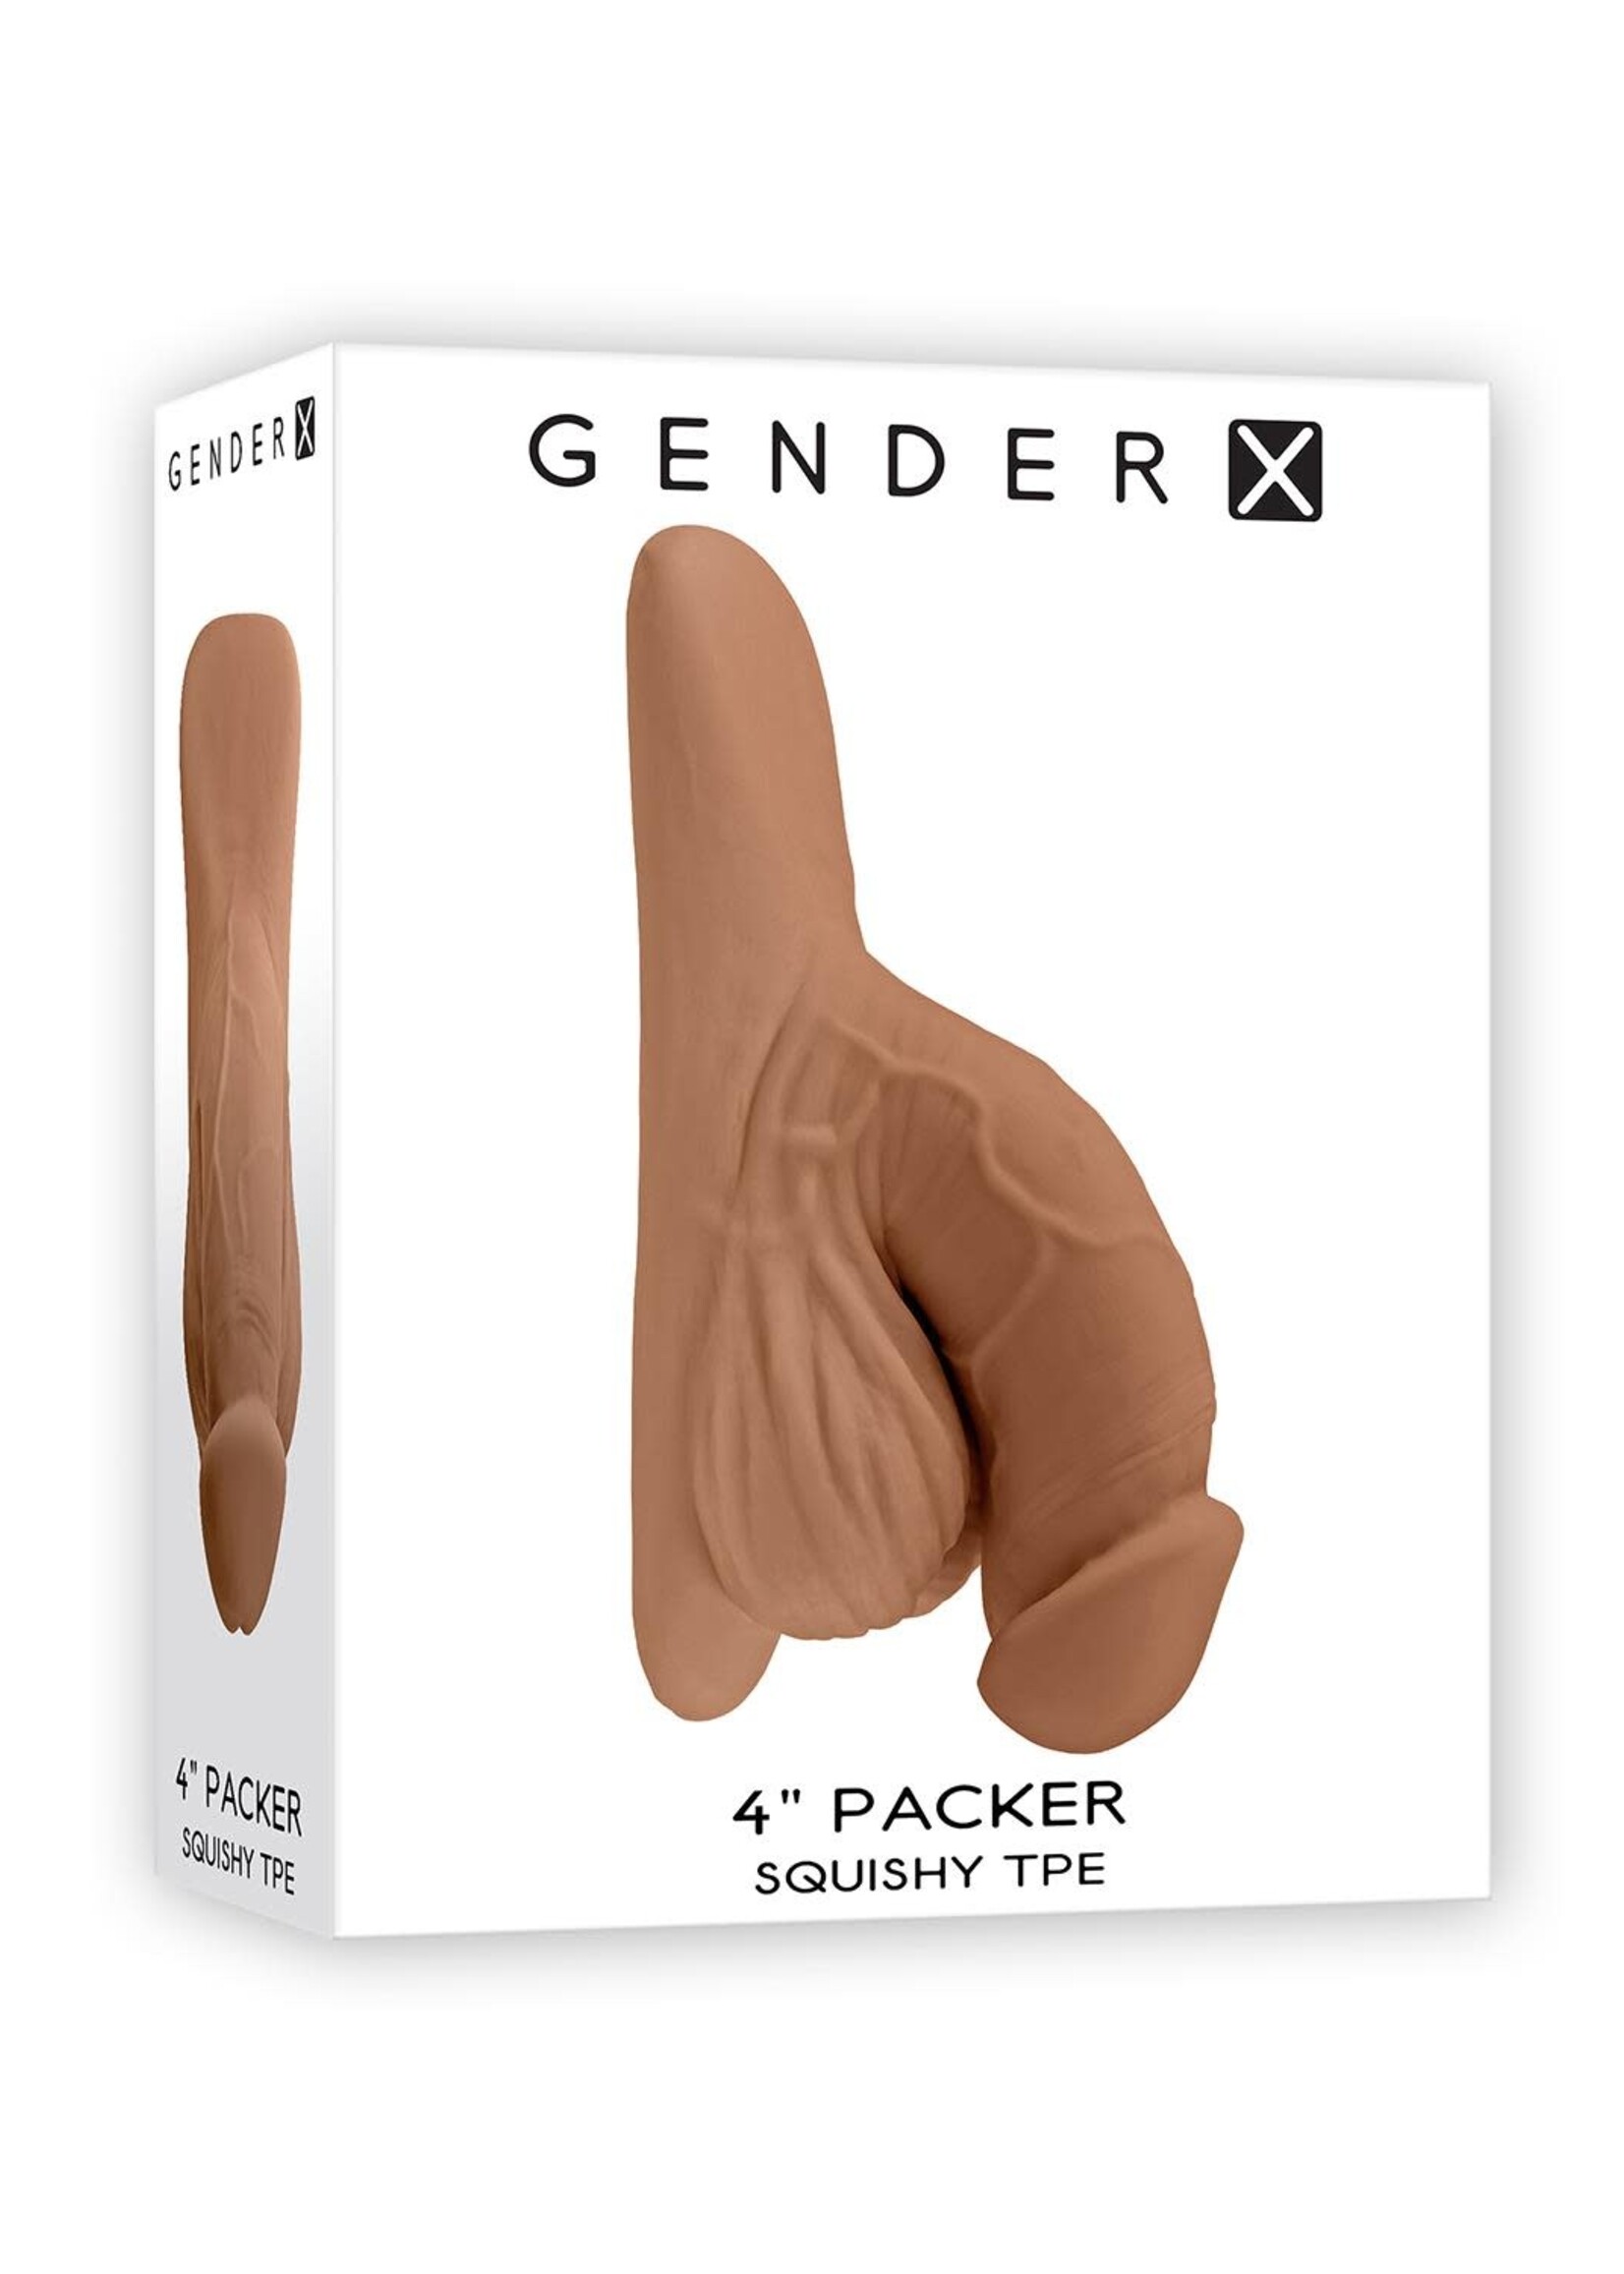 Gender X Packer, light mocca flesh 4''